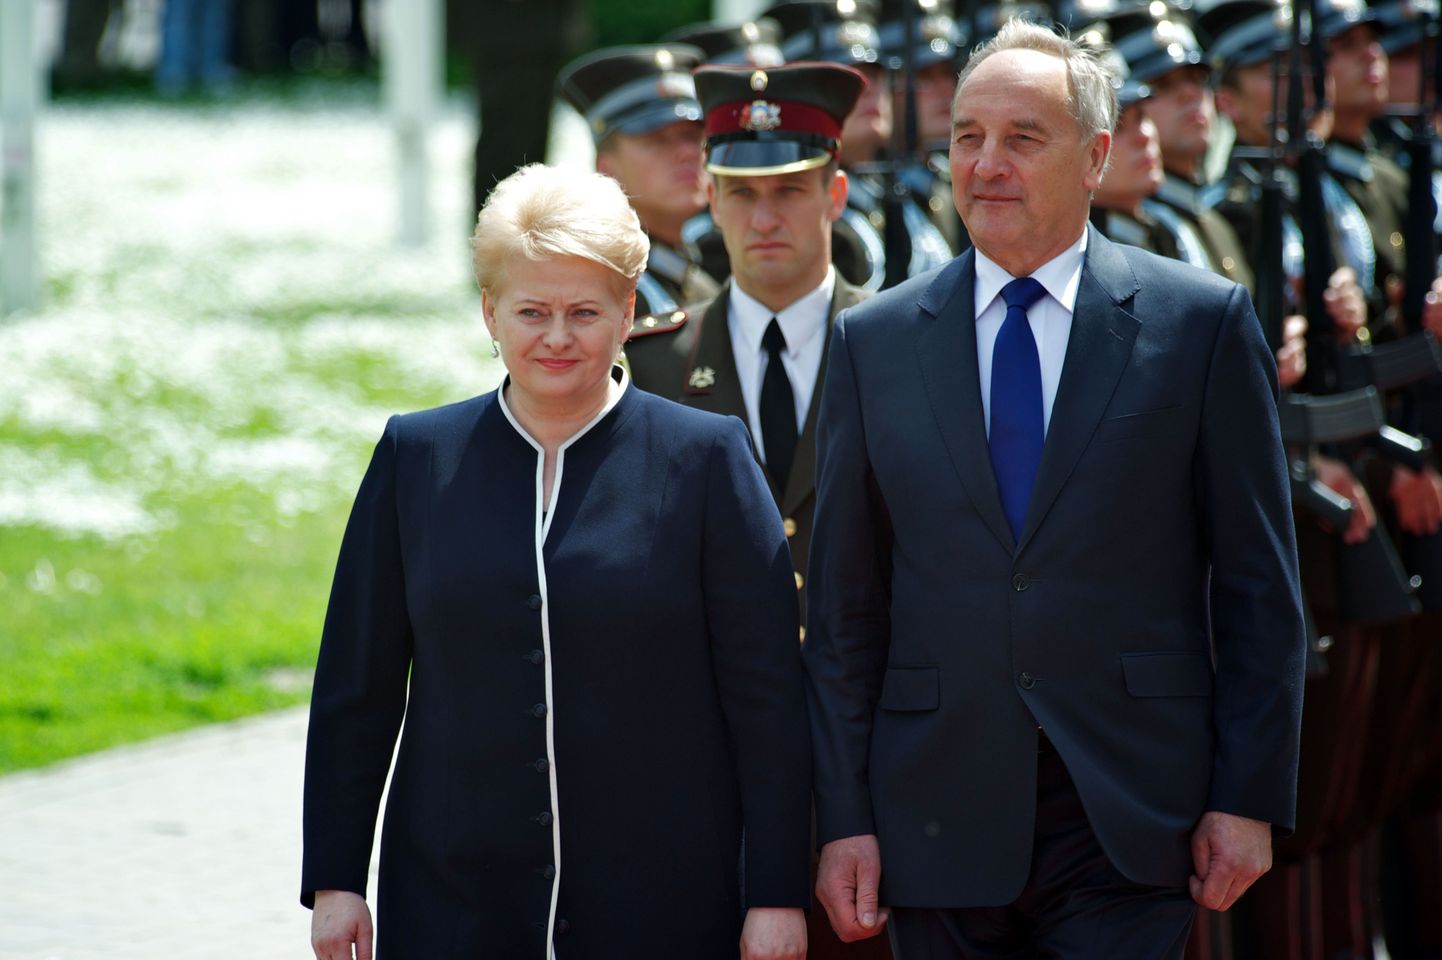 Läti president Andris Bērziņš koos Leedu riigipea Dalia Grybauskaitega.